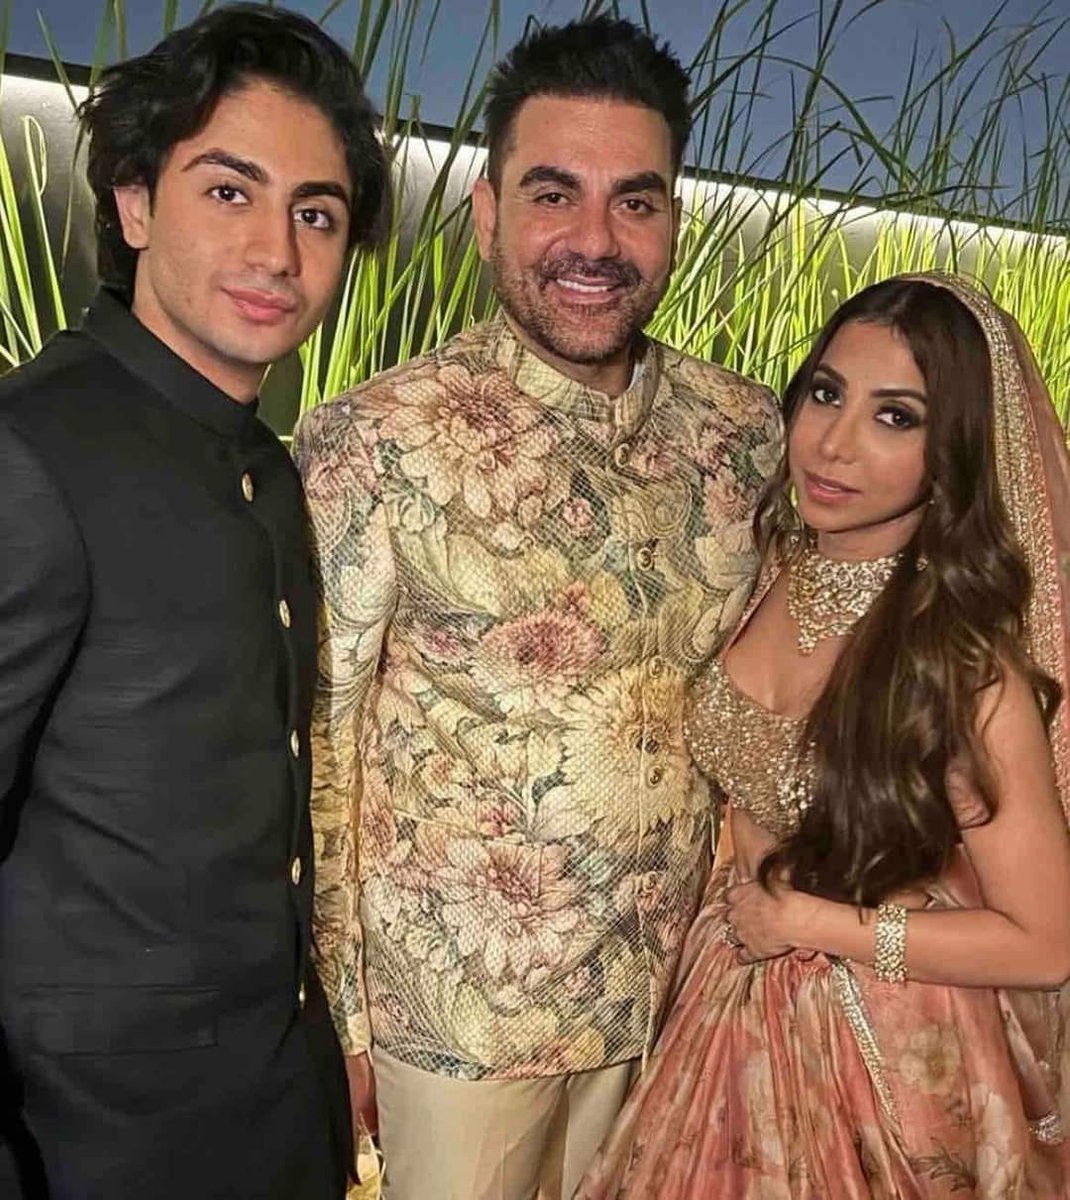 #SalmanKhan के भाई #Arbazkhan की #Shurakhan से निकाह के बाद की पहली तस्वीर #bollywood #marriage #khanfamily #Mumbai #malaikakhan